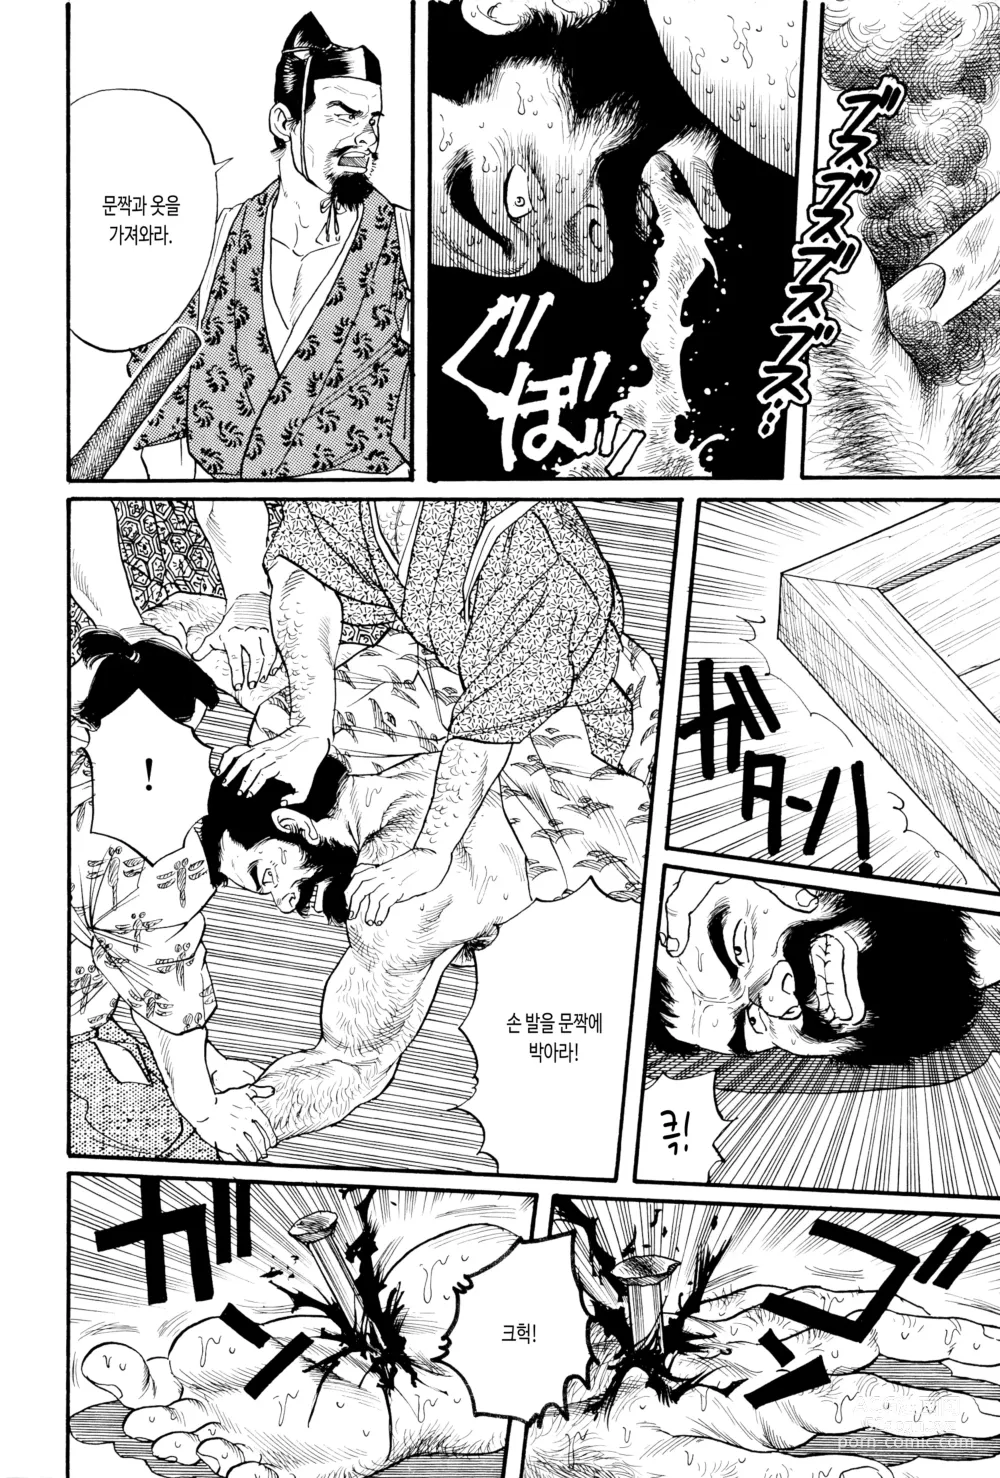 Page 20 of manga 코로모가와 이야기